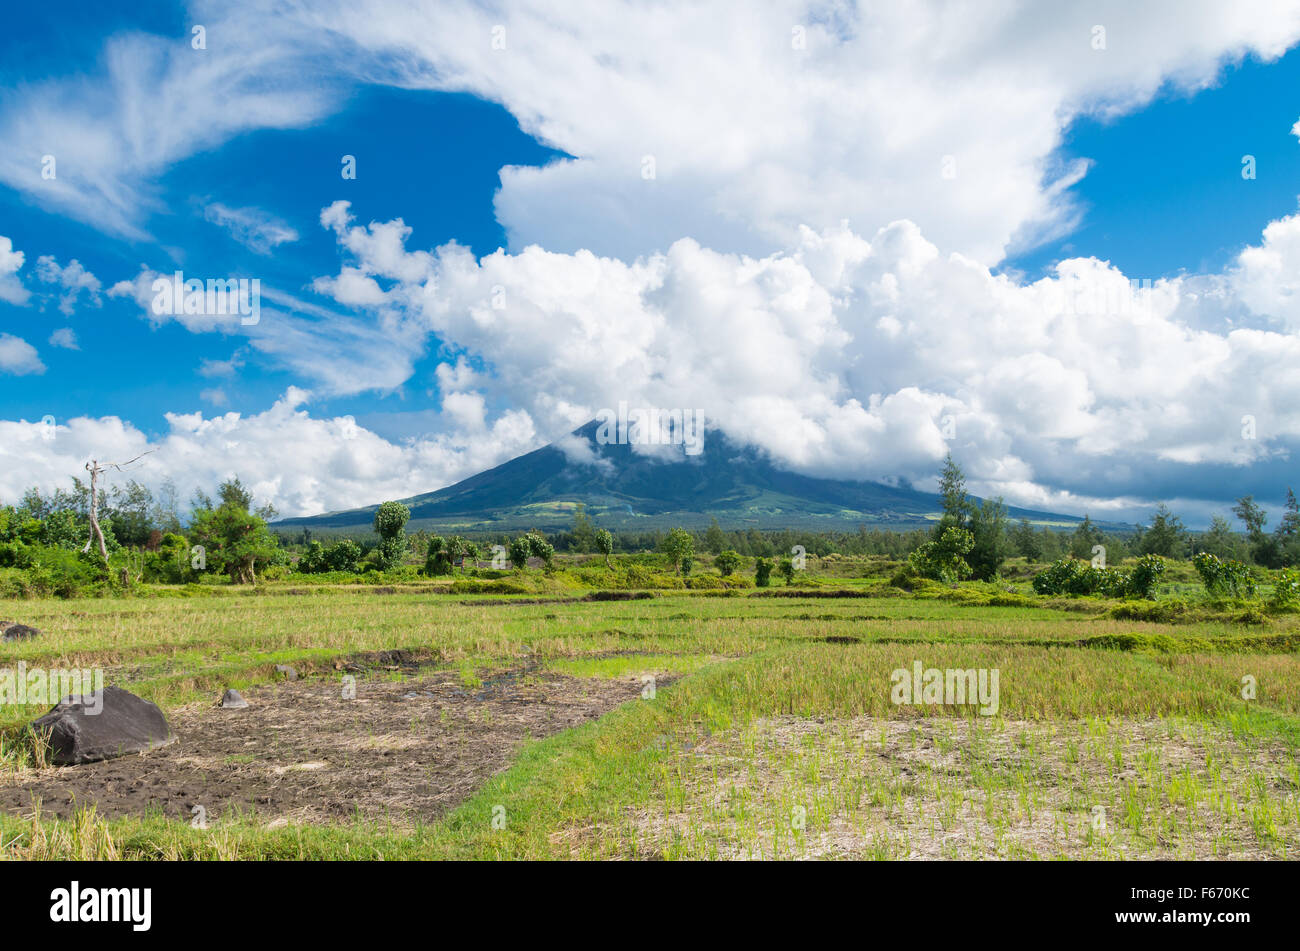 Mayon ist eine klassische Stratovulkan (composite) Art des Vulkans mit einem kleinen zentralen Gipfelkrater. Konus gilt das worl Stockfoto